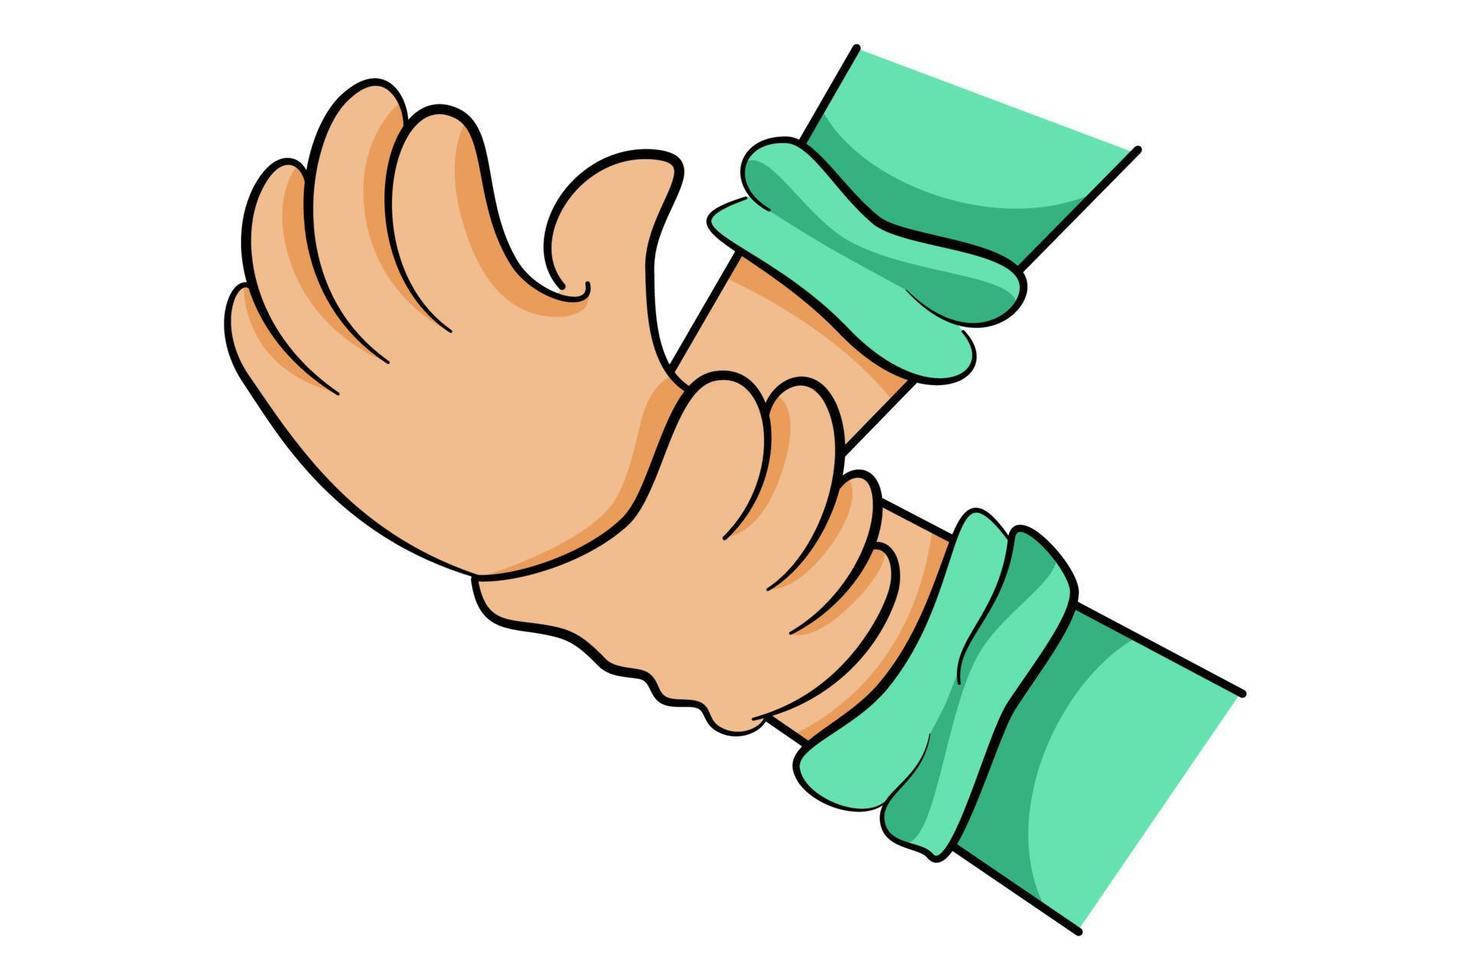 karikaturillustration des handhaltens, der entspannenden massage, der handgelenkspflege, der schwachen hand, des guillain-barre-syndroms vektor